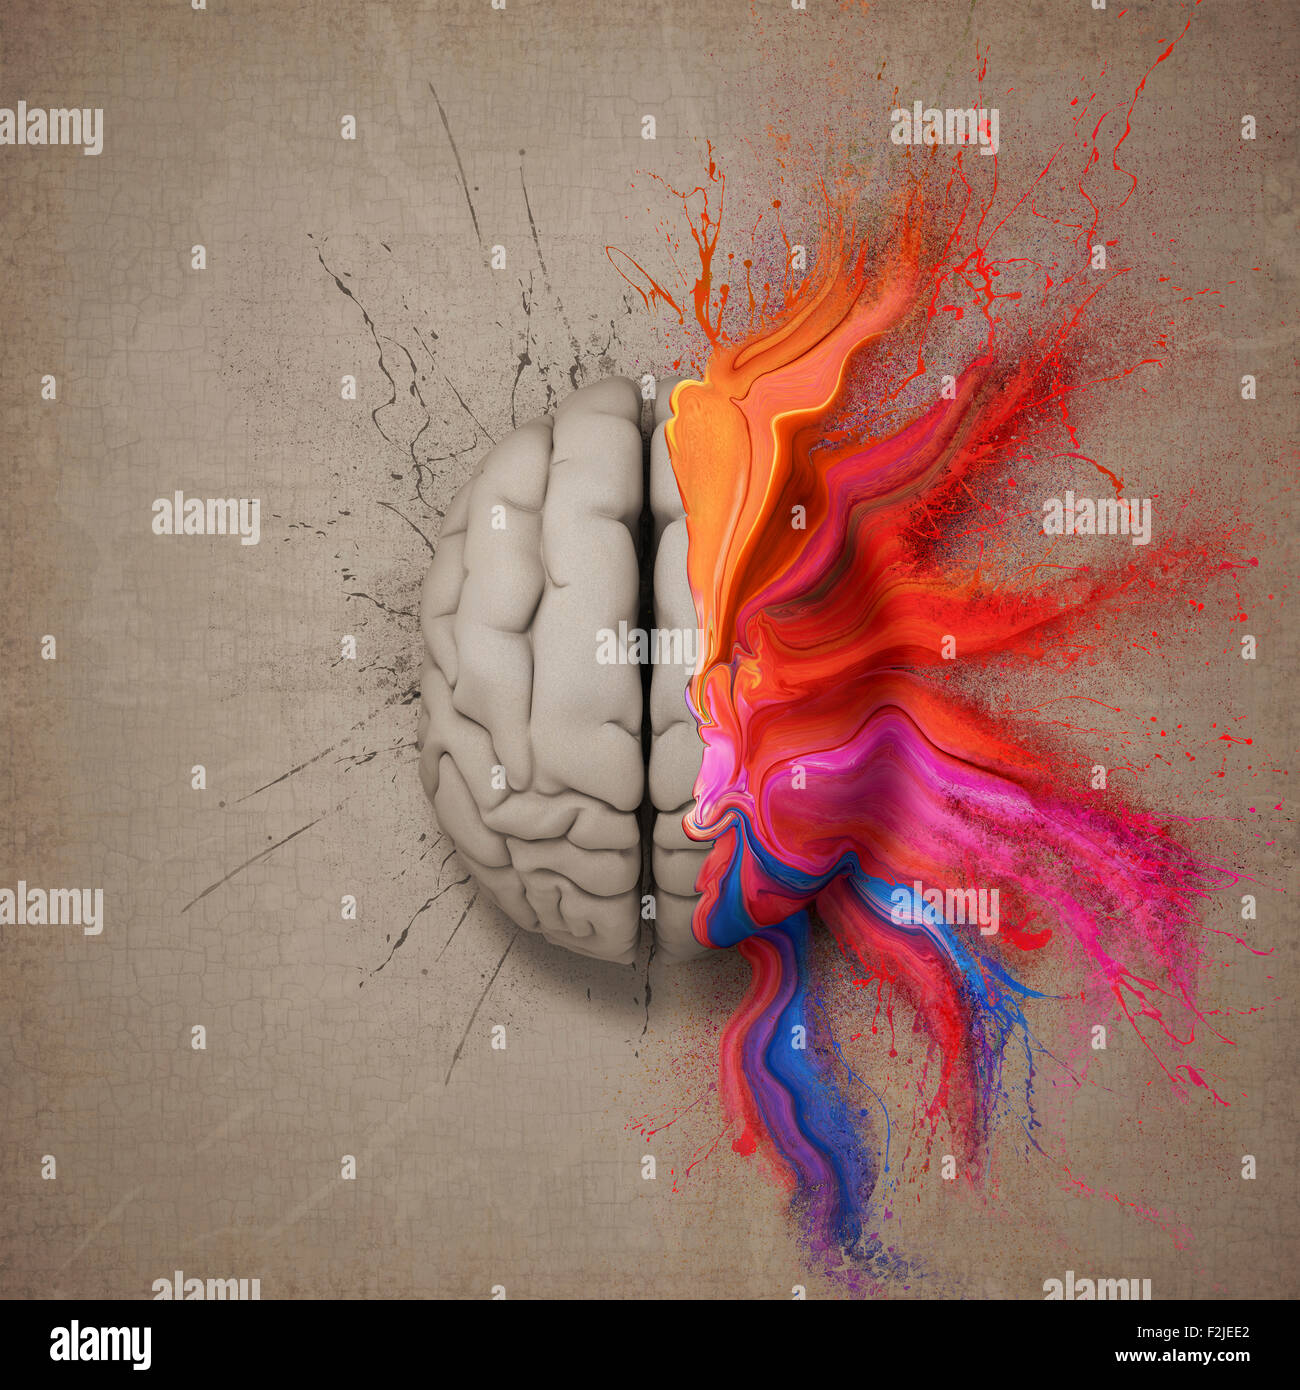 Kreativer Kopf oder Gehirn illustriert mit bunten Farbspritzer und Dispersion. Konzeptionelle Computer Artwork. Stockfoto